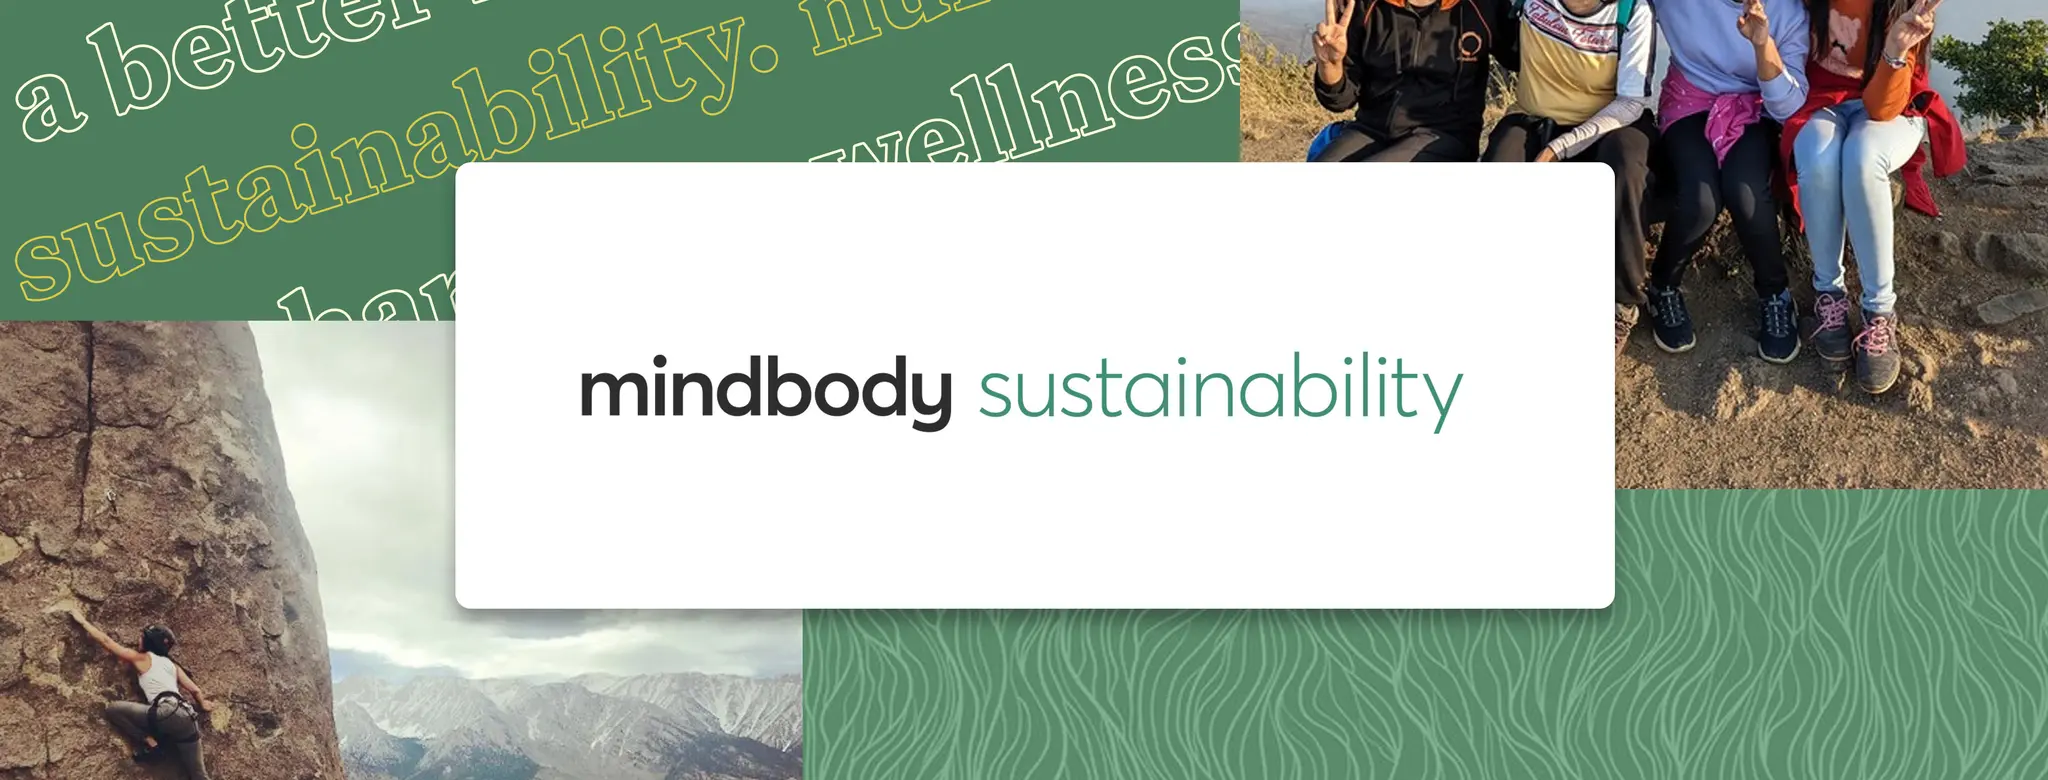 mindbody sustainability